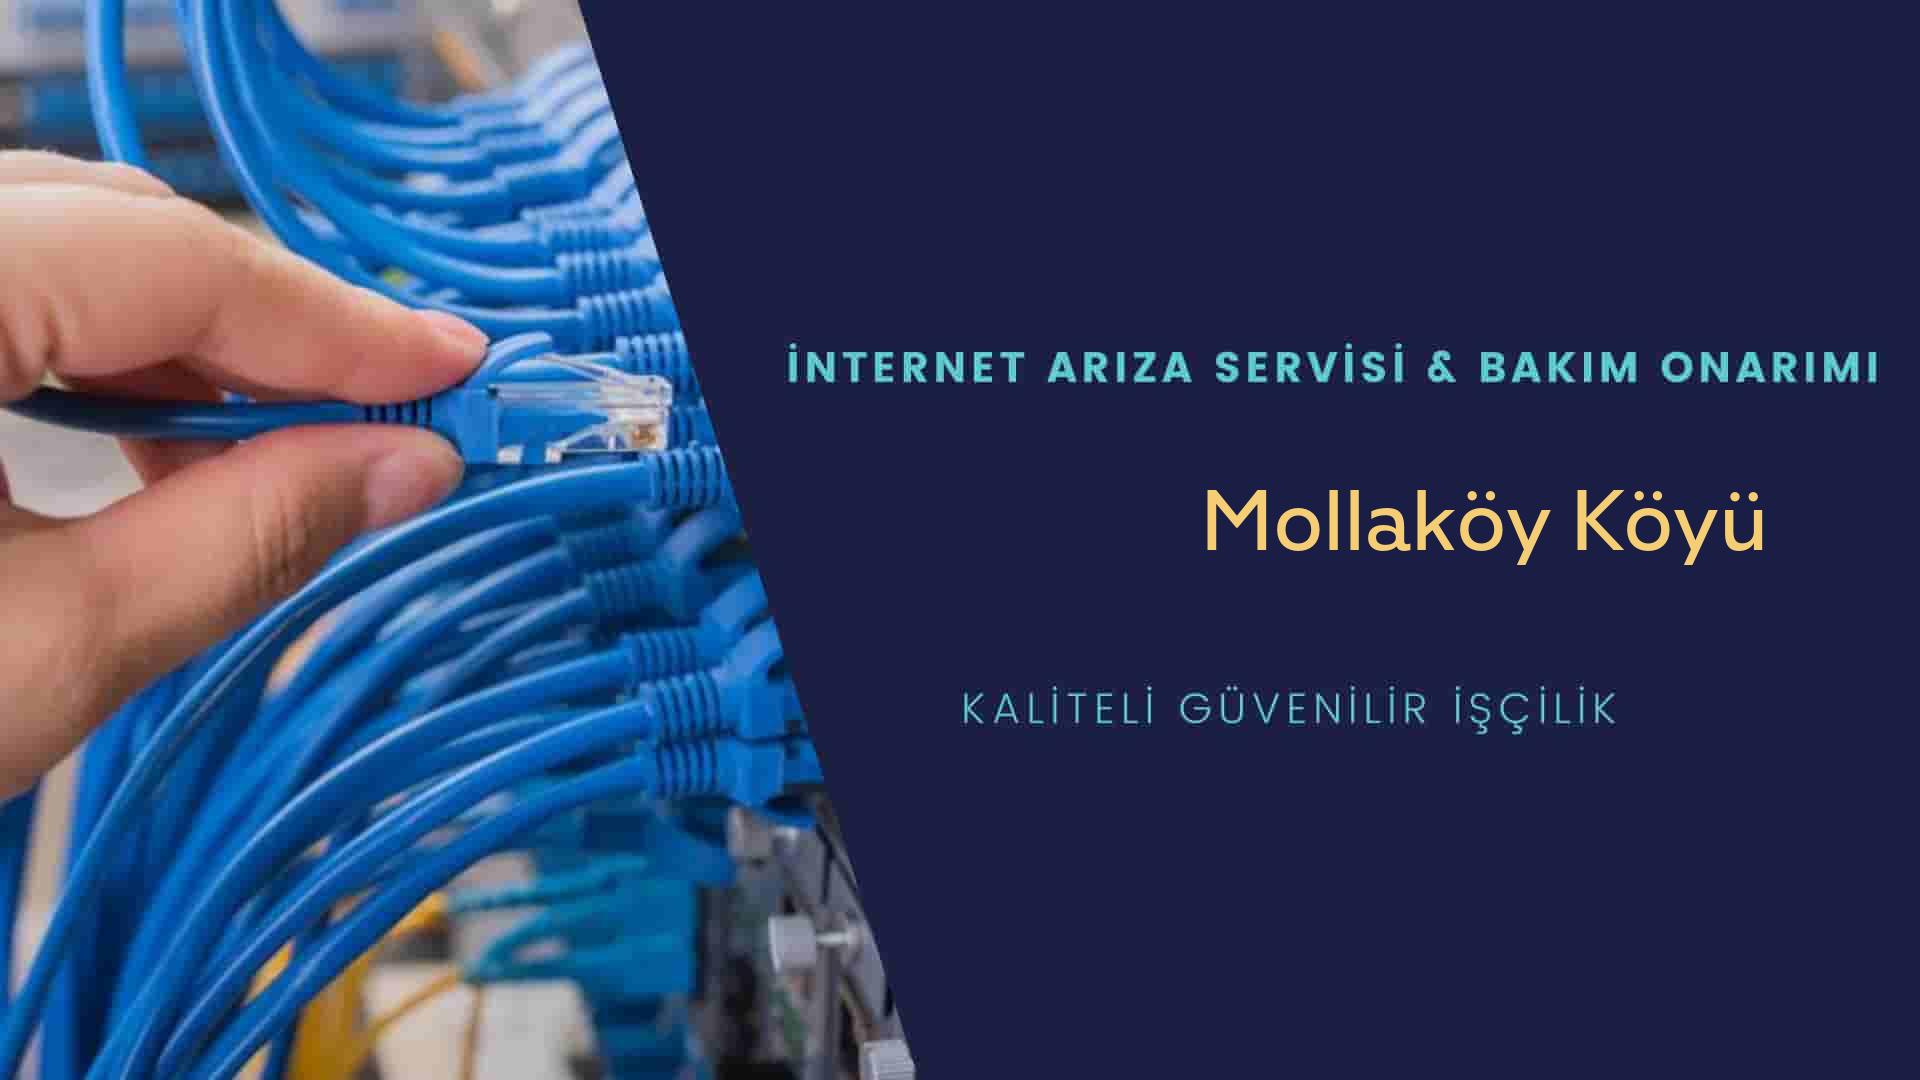 Mollaköy Köyü internet kablosu çekimi yapan yerler veya elektrikçiler mi? arıyorsunuz doğru yerdesiniz o zaman sizlere 7/24 yardımcı olacak profesyonel ustalarımız bir telefon kadar yakındır size.